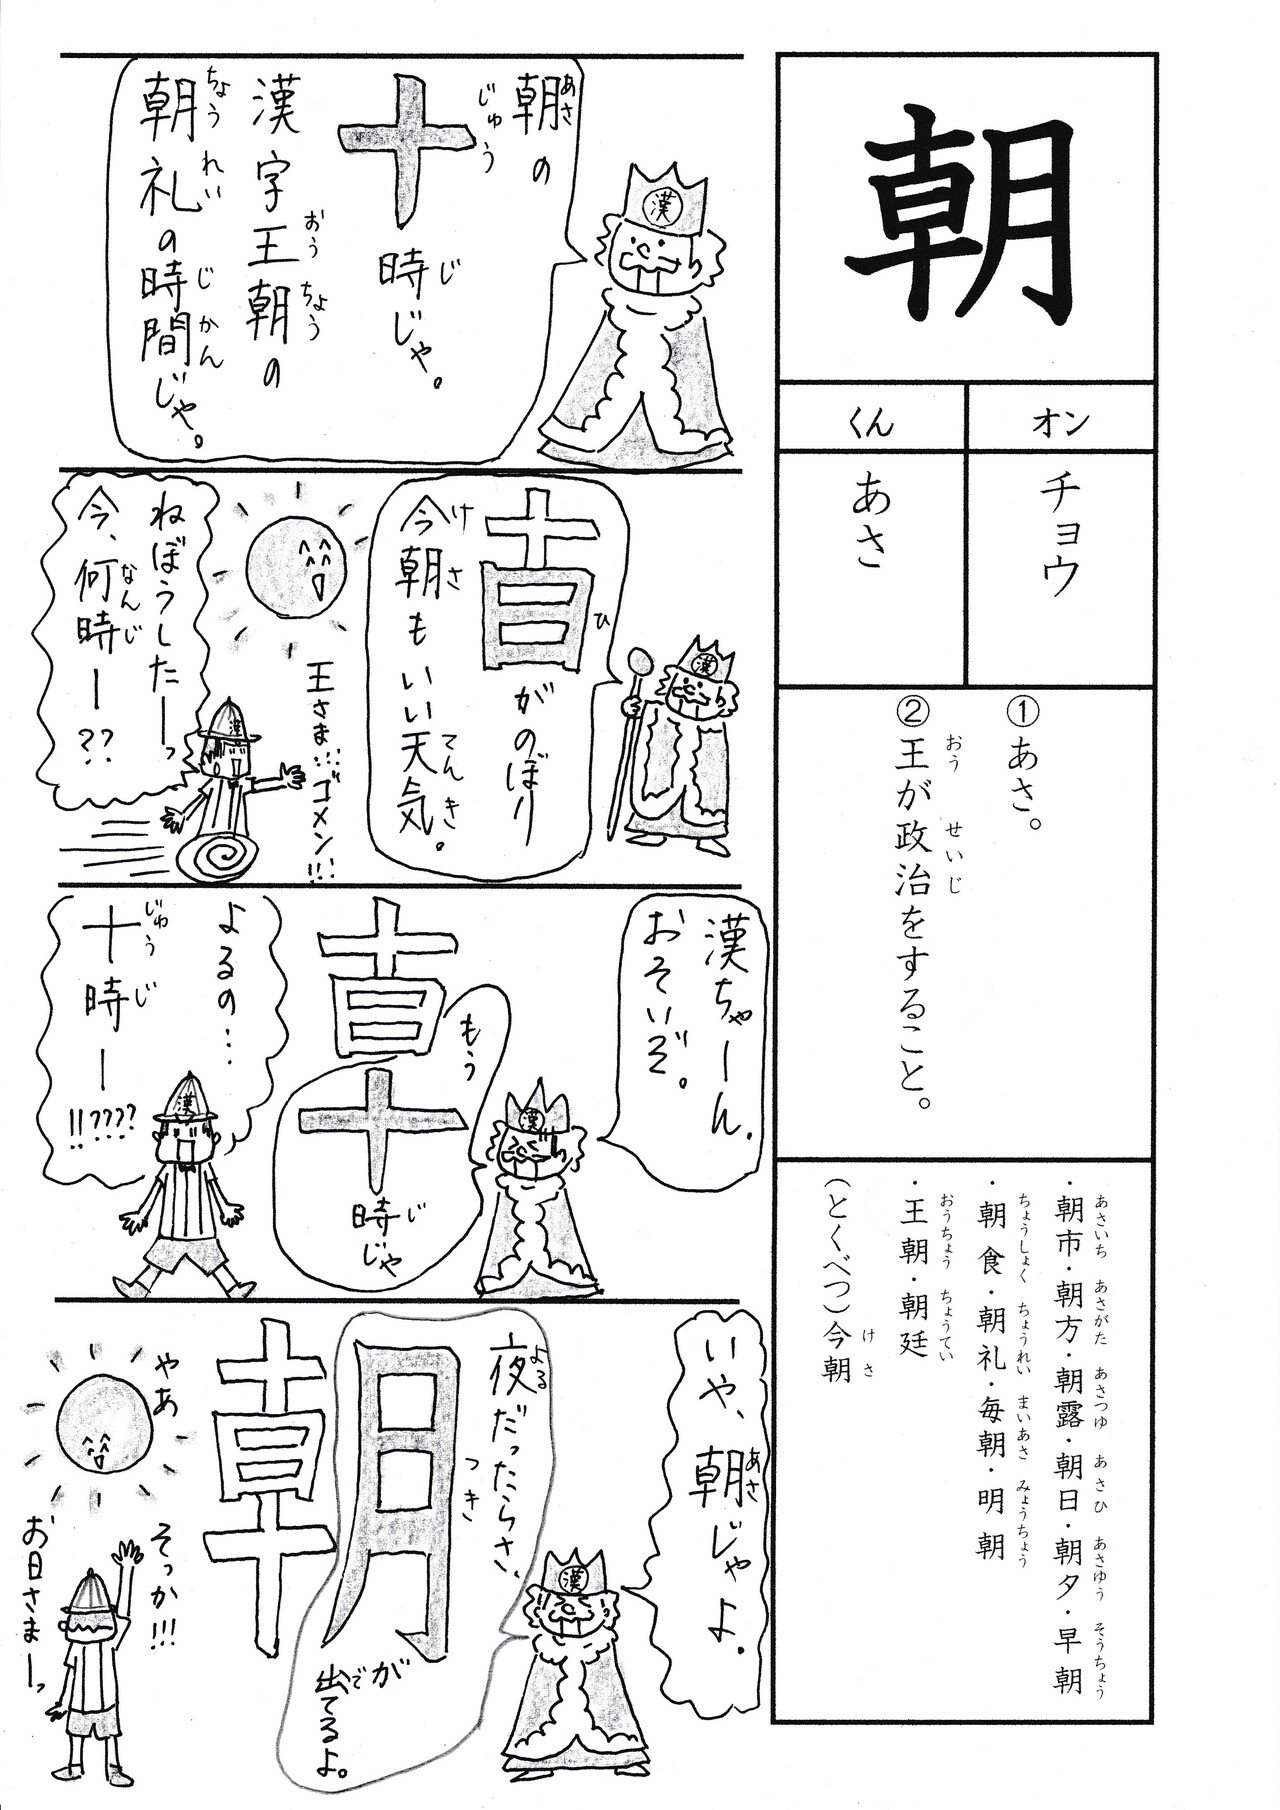 学校では教えてくれない漢字漫画 小2 朝 Sun Sunny D01 Note